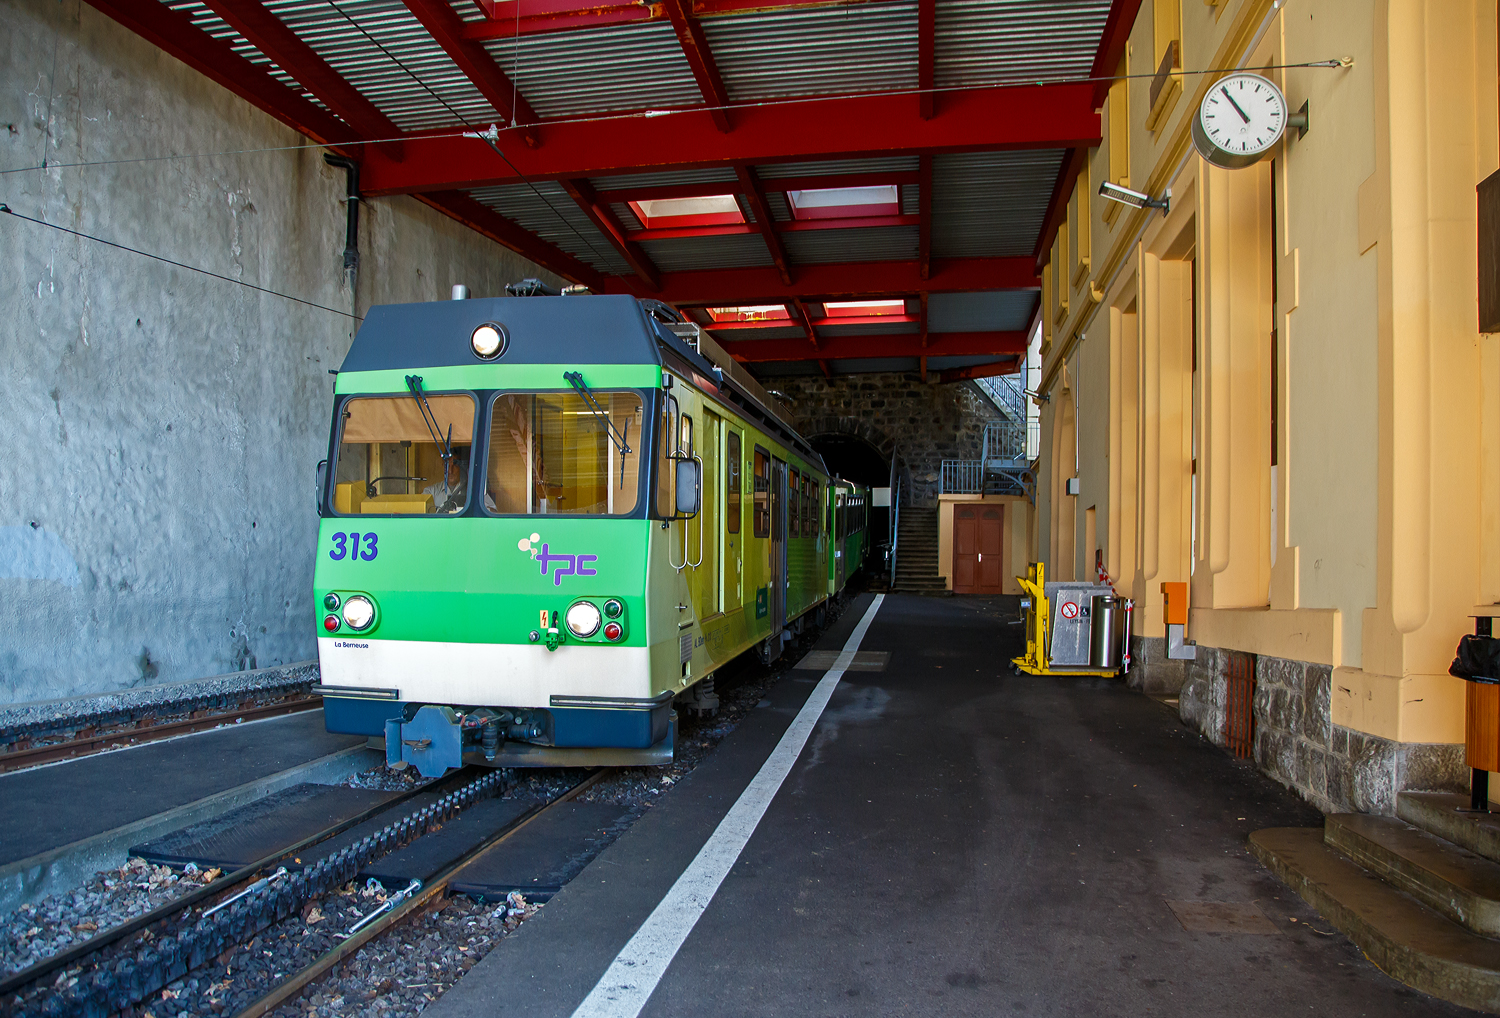 Der tpc AL BDeh 4/4 313 „La Berneuse“ (2. Klasse elektrischen Personentriebwagen mit Gepäckabteil für den gemischten Zahnrad- und Adhäsionsbetrieb) mit den beiden AL Steuerwagen AL Bt 362 und AL Bt 363 kommt am 08 September 2023 vom Leysin - Grand-Hôtel hinab, verlässt gerade den 287 m langen Kehrtunnel Leysin und erreicht somit die Station Leysin-Feydey. Der dreiteilige Zug fährt als Regionalzug (R 25) von Leysin - Grand-Hôtel nach Aigle.

Eine Einzelfahrkarte/Einzelbillett von Aigle nach Leysin - Grand-Hôtel (5 Zonen) kostet im Vollpreis 9,20 CHF/Person somit die Hin- und Rückfahrt (da vermutlich über 2 Stunden) 18,40 CHF/Person. Wir hatten aber Glück (nicht nur mit dem wunderschönen Wetter), die tpc feierte 125 Jahre der BVB an dem Wochenende, so bekamen wir Tageskaten fürs ganze Netz der TPC für 10,- CHF/Person. Die drei TPC-Strecken ab Aigle (AL, ASD und AOMC) konnten wir so gut an einem Tag erkunden bzw. erfahren. Für die 12,4 Kilometer lange Strecke von Bex nach Villars-sur-Ollon der BVB (Bex–Villars–Bretaye) brauchten wir dann einen ganzen weiteren Tag, den man auch einrechnen sollt.

Erklärung der verwendeten Abkürzungen:
tpc = Tansports Publics du Chablais
AL = Chemin de fer Aigle–Leysin (Aigle-Leysin-Bahn)
ASD = Aigle–Sépey–Diablerets
AOMC = Aigle–Ollon–Monthey–Champéry
BVB = Chemin de fer Bex–Villars–Bretaye